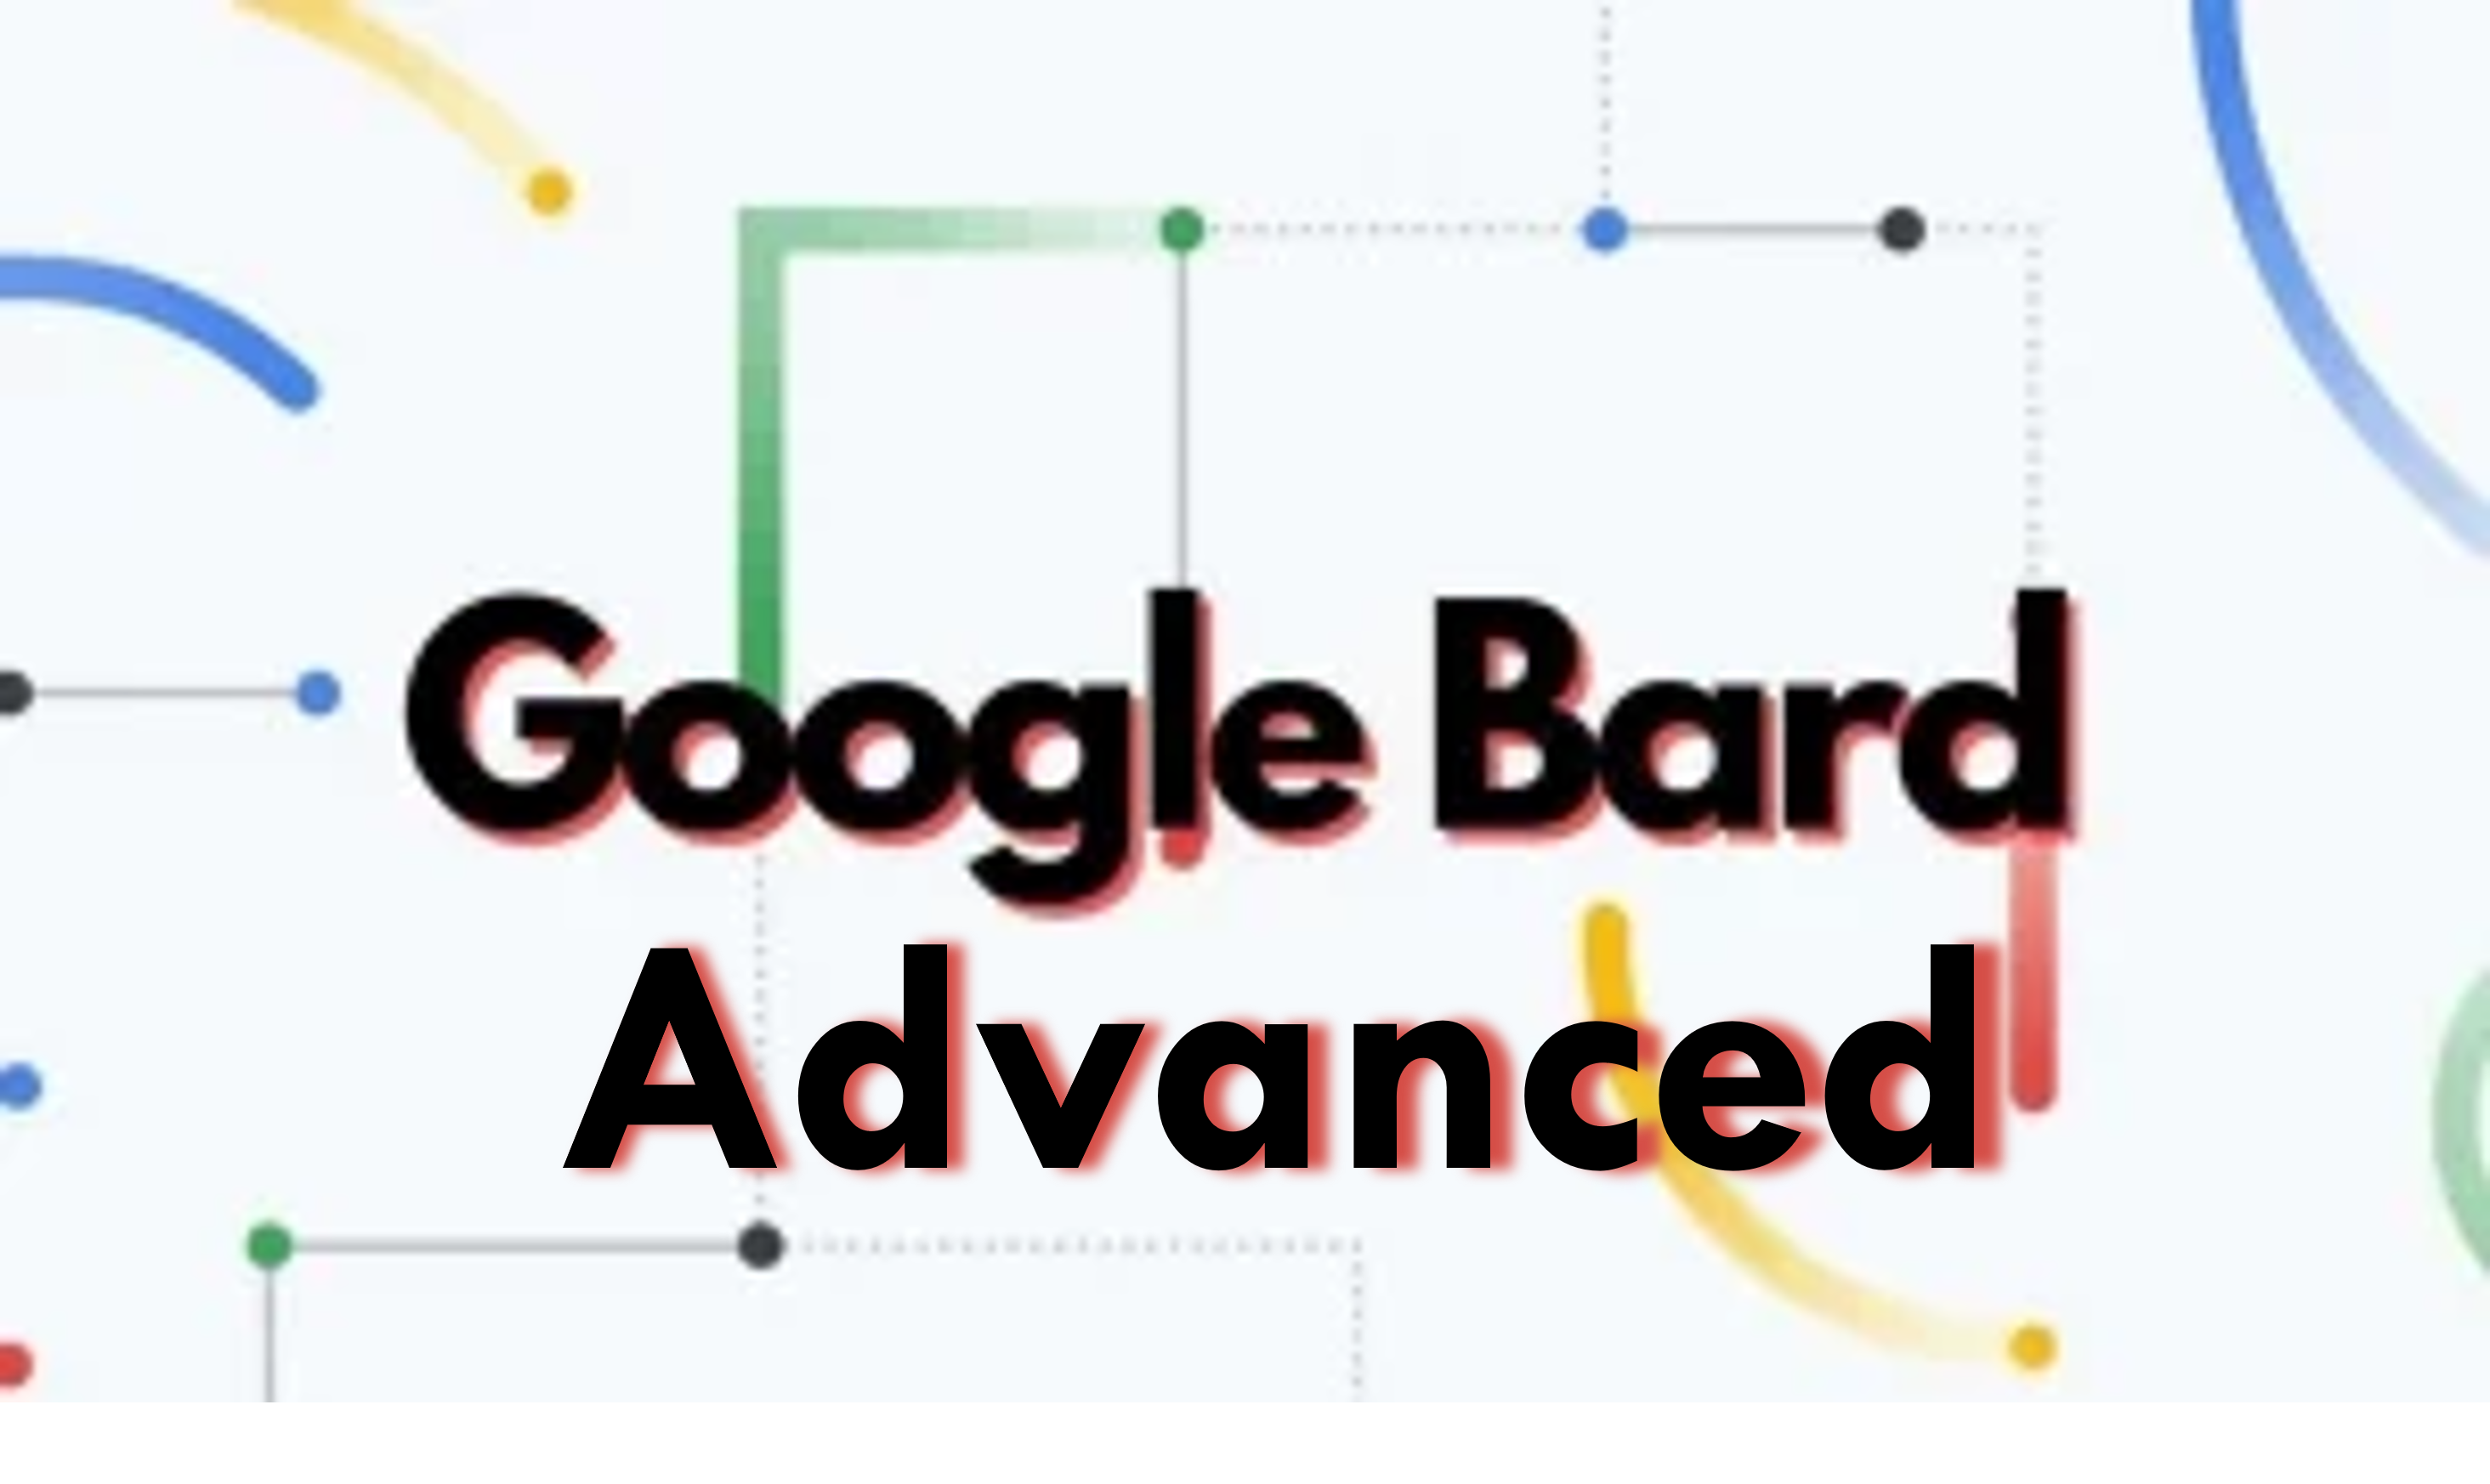 Zagotovite si brezplačno 3-mesečno preskusno različico Google Bard Advanced; Izkusite prihodnost AI Chatbotov